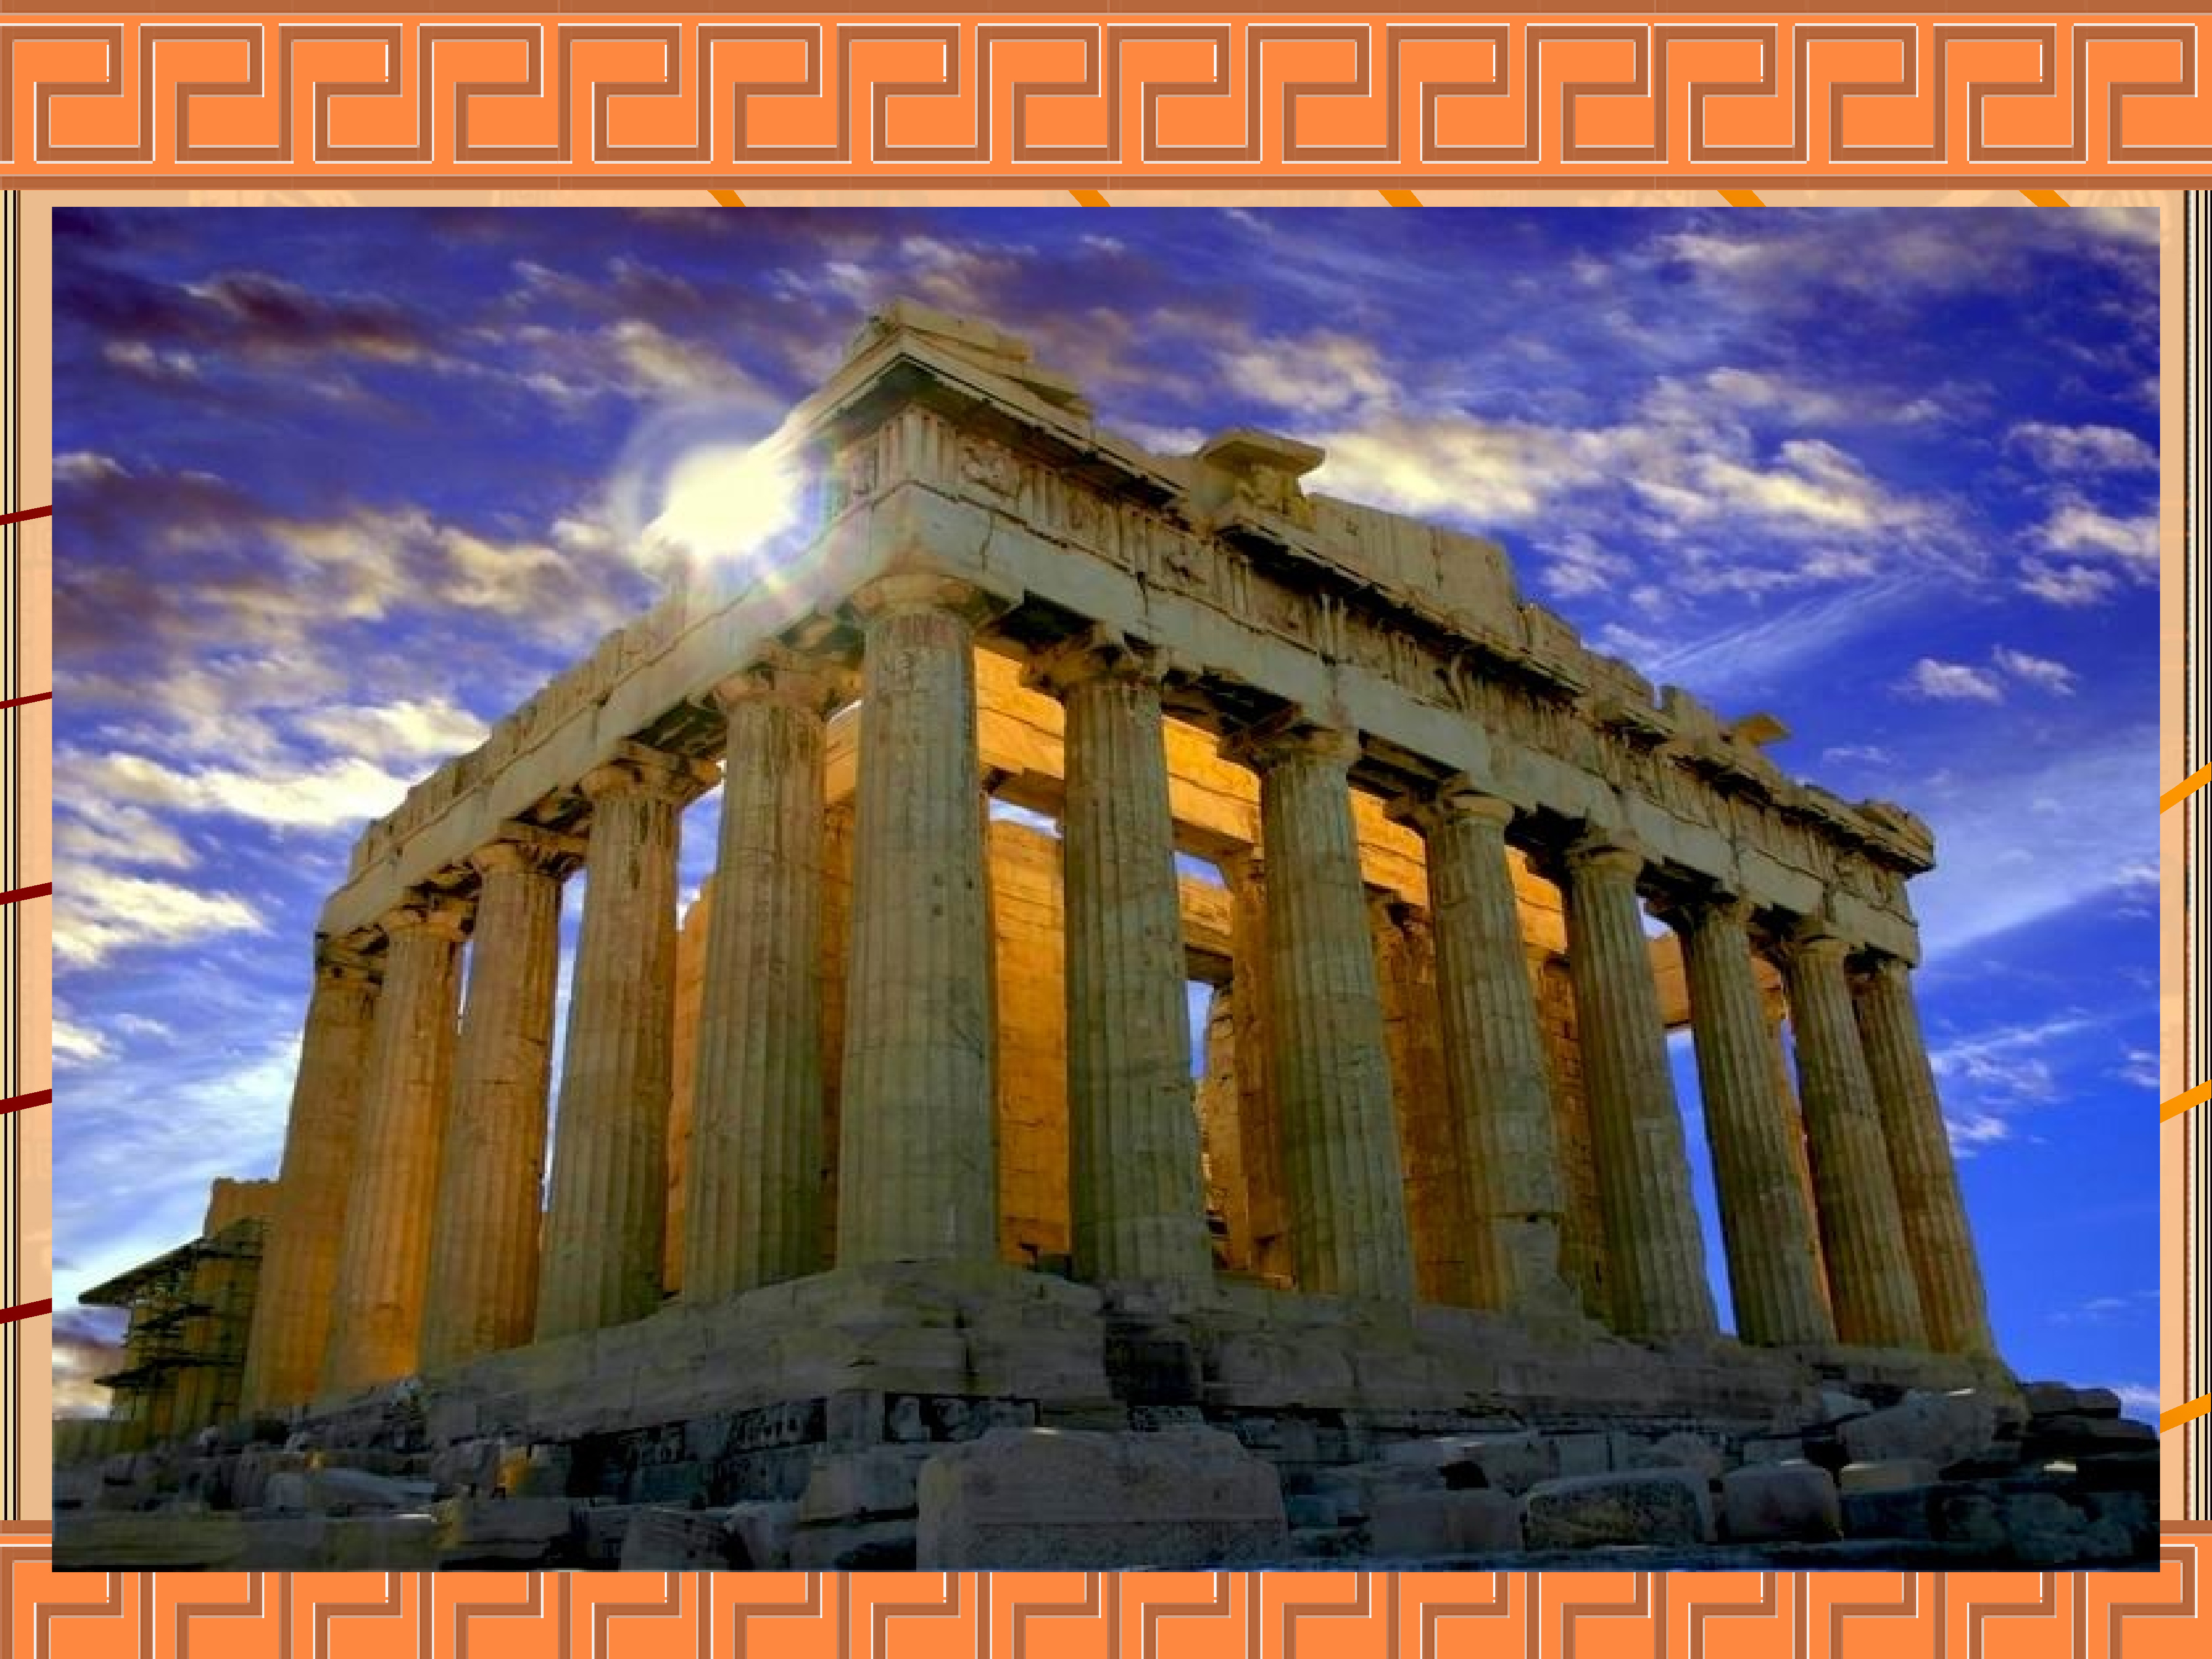 Город греческой культуры